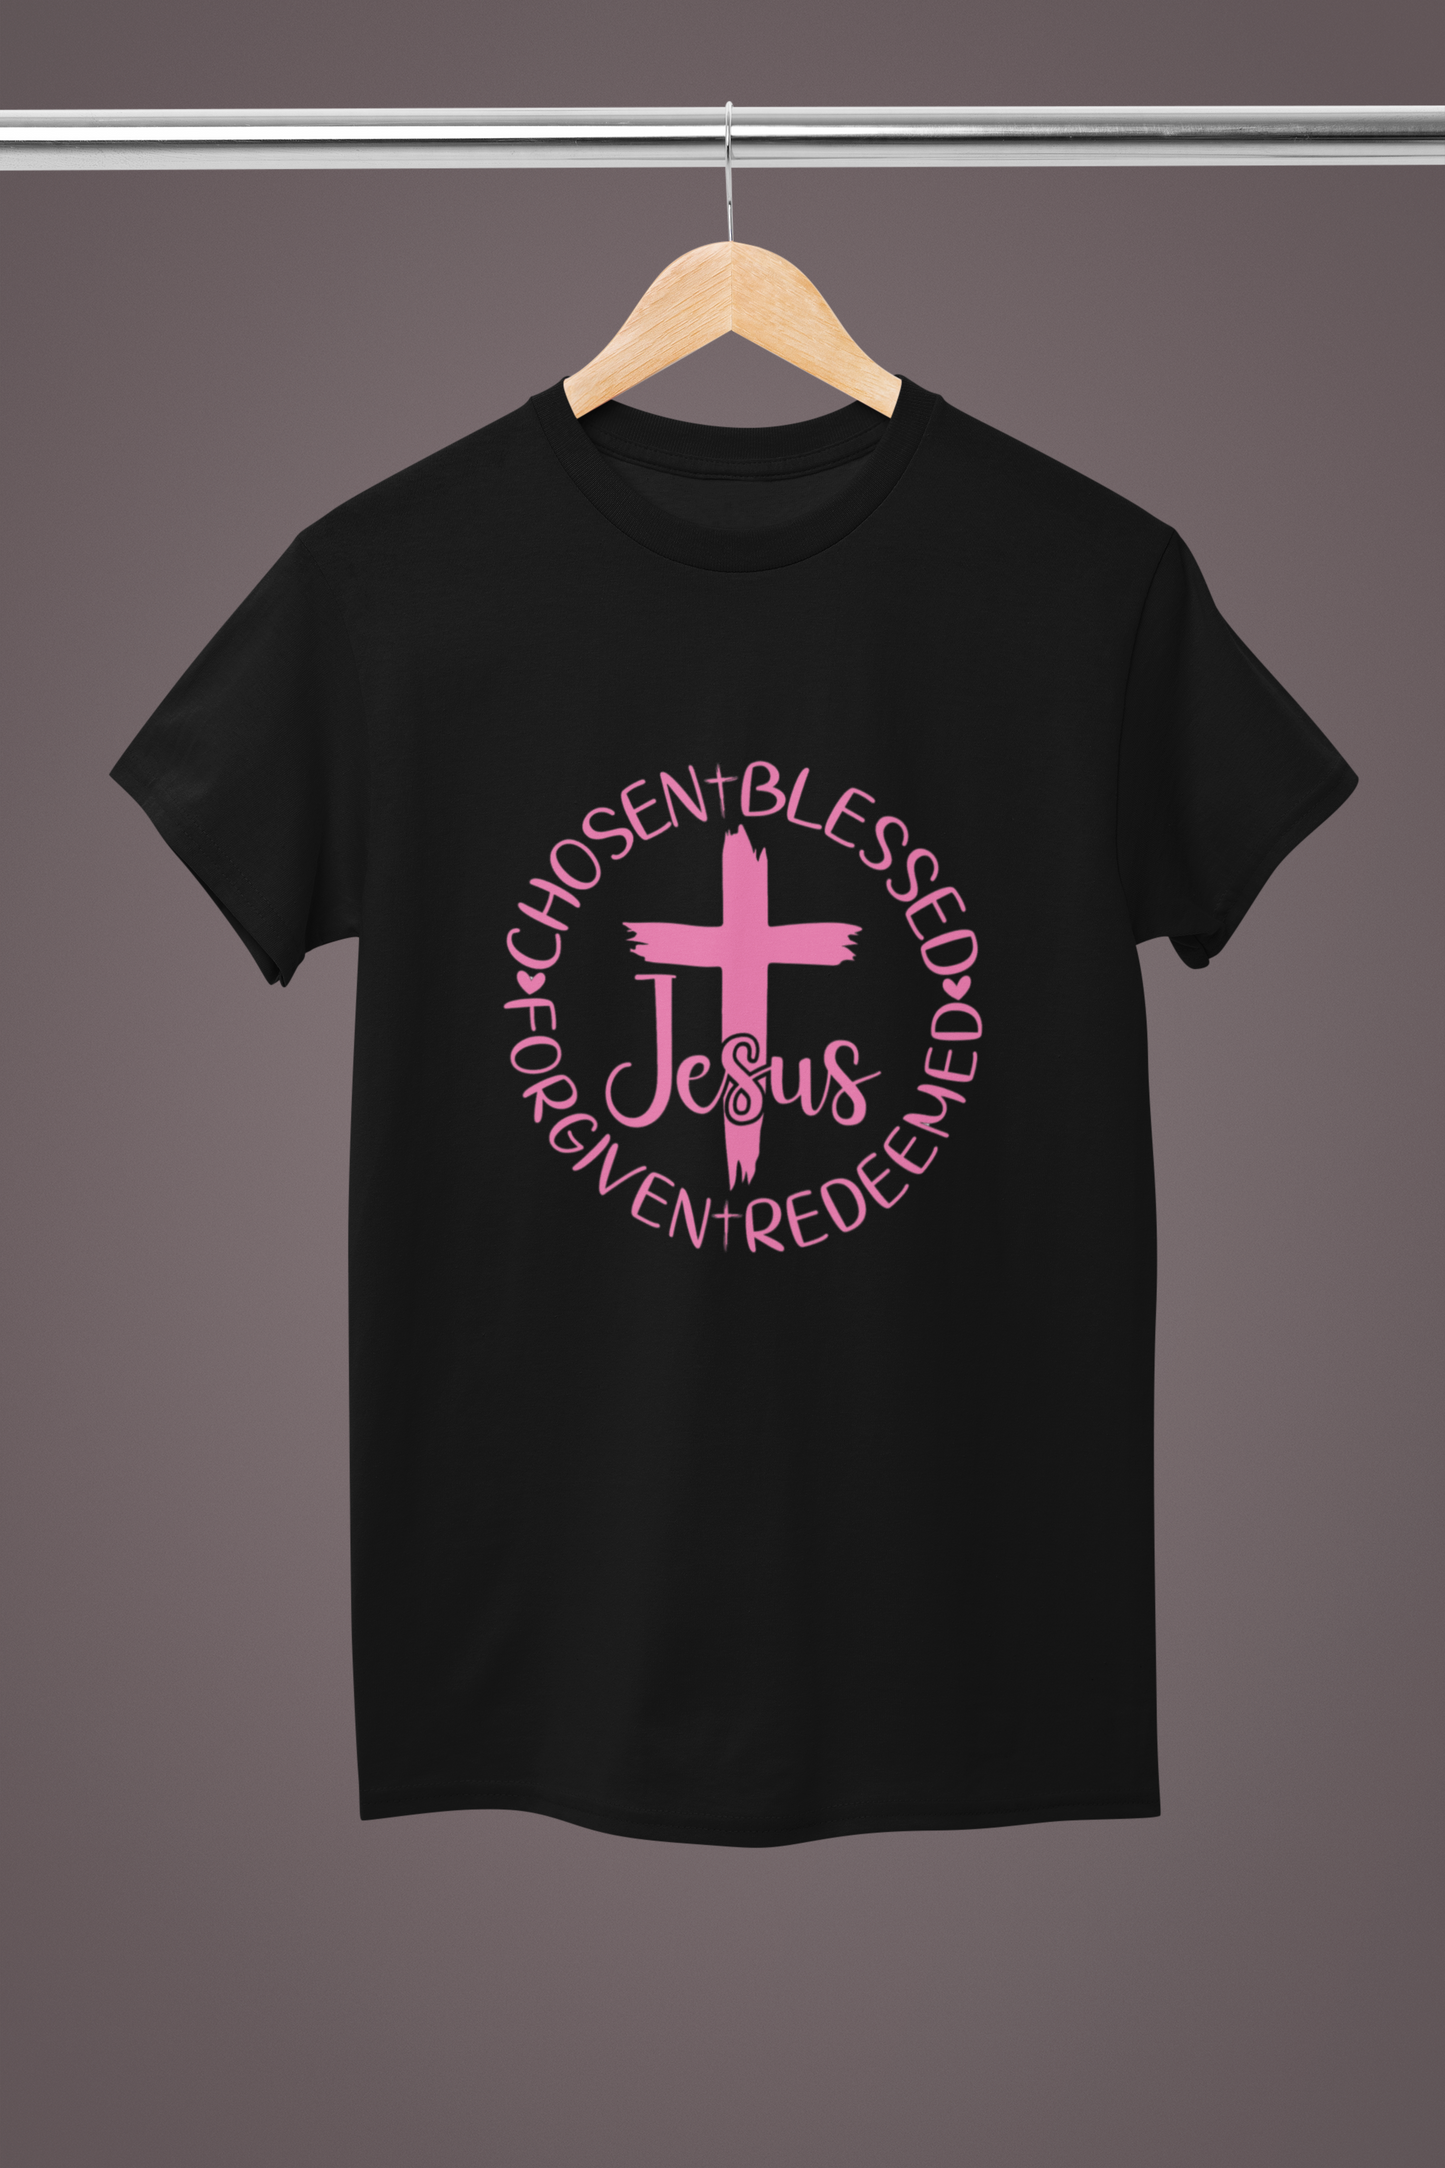 Chosen, Blessed, Forgiven, Redeemed w/Cross Short Sleeve T-Shirt